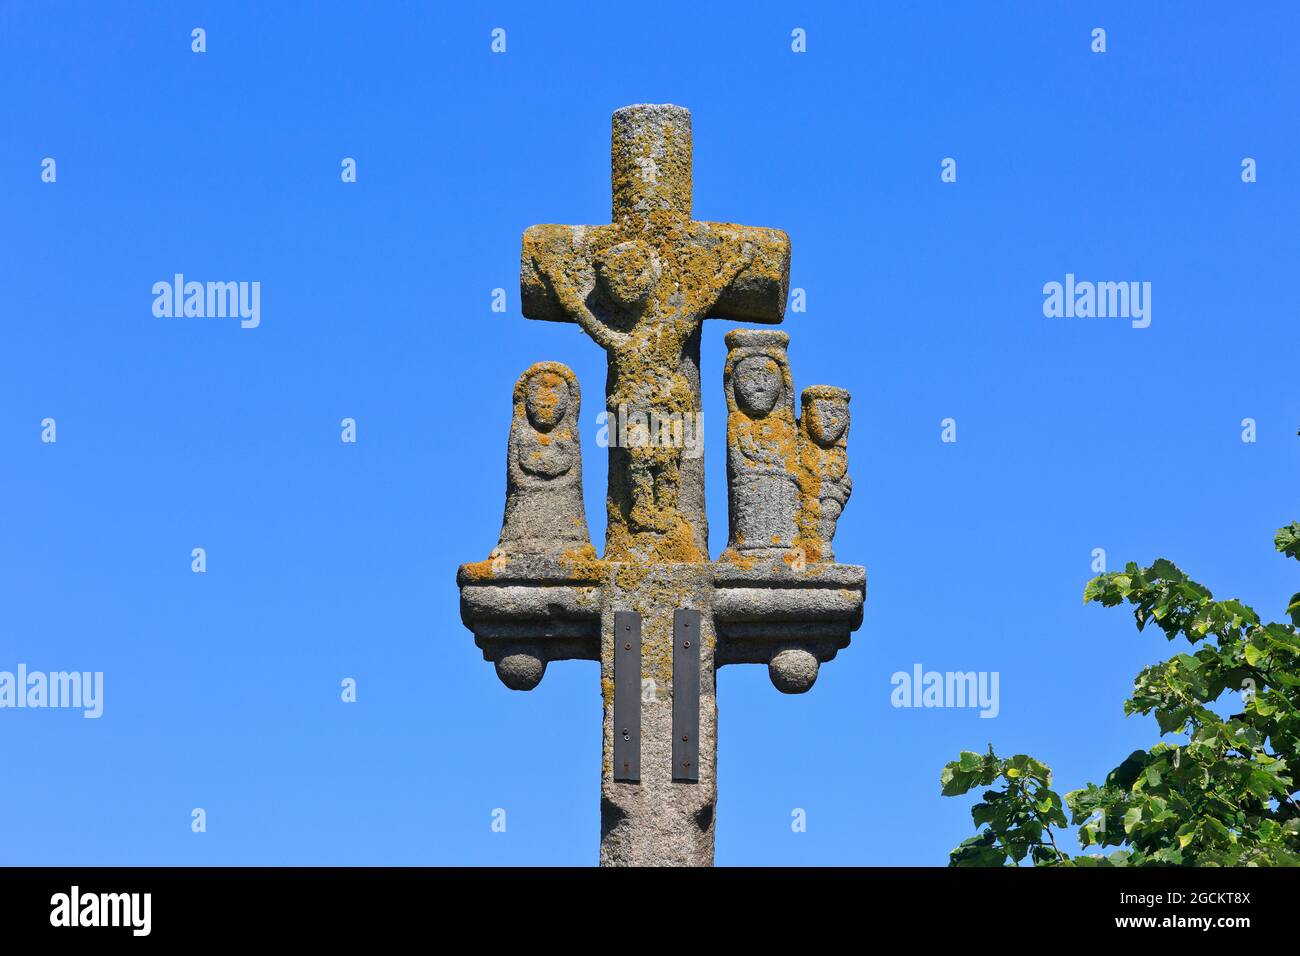 Croce bretone immagini e fotografie stock ad alta risoluzione - Alamy